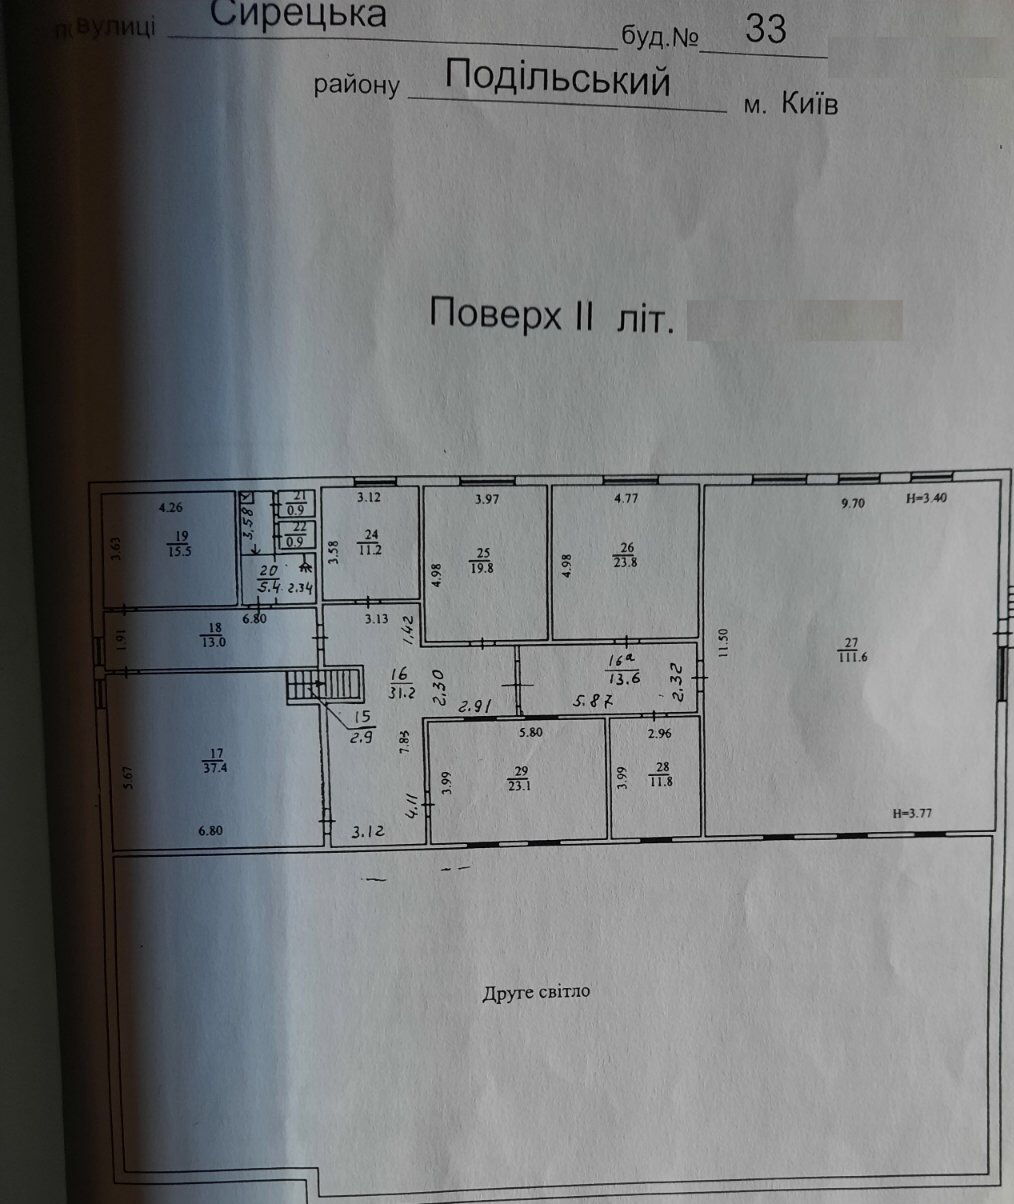  Офисно-складское помещение, W-7273143, Сырецкая, 33, Киев - Фото 2